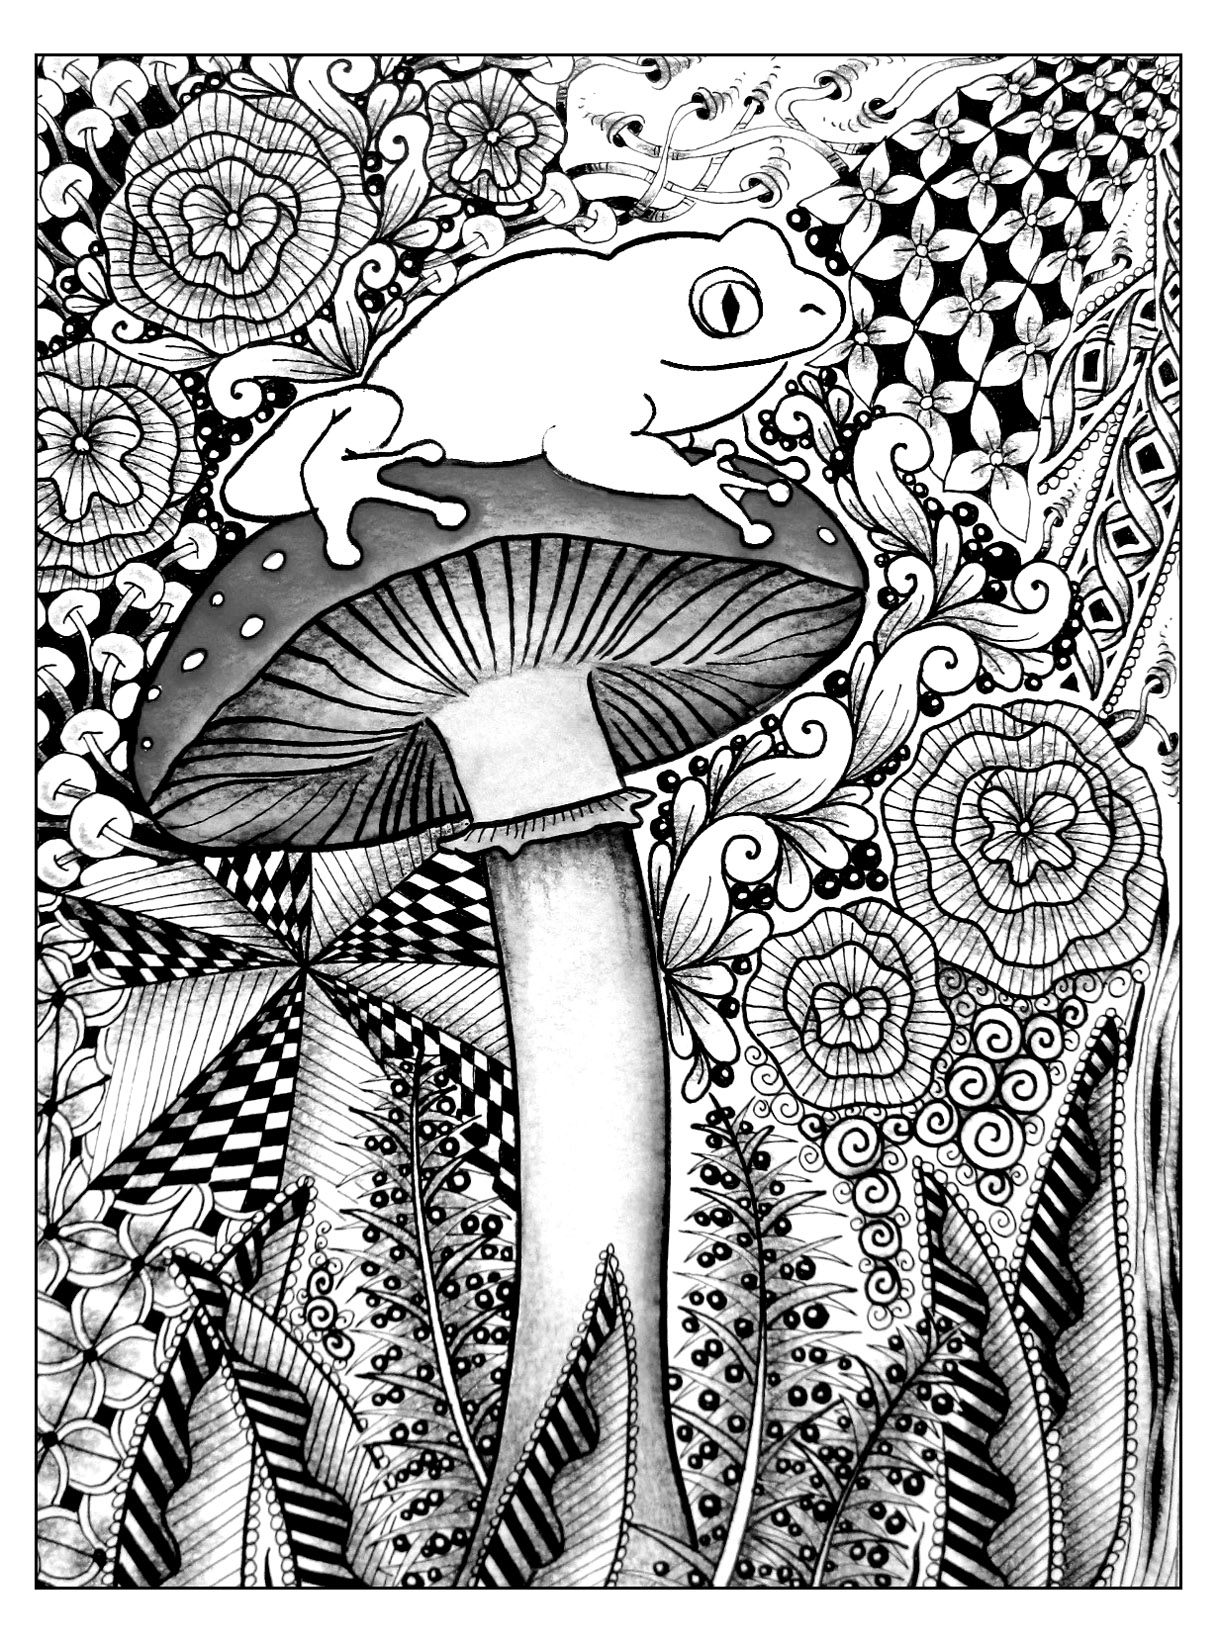 Uma rã bonita pousada num cogumelo. Um verdadeiro desafio! Neste desenho, uma bonita rã está empoleirada num cogumelo. Estão rodeados por uma vegetação fascinante ... Há muitos pormenores a ter em conta para fazer esta coloração.